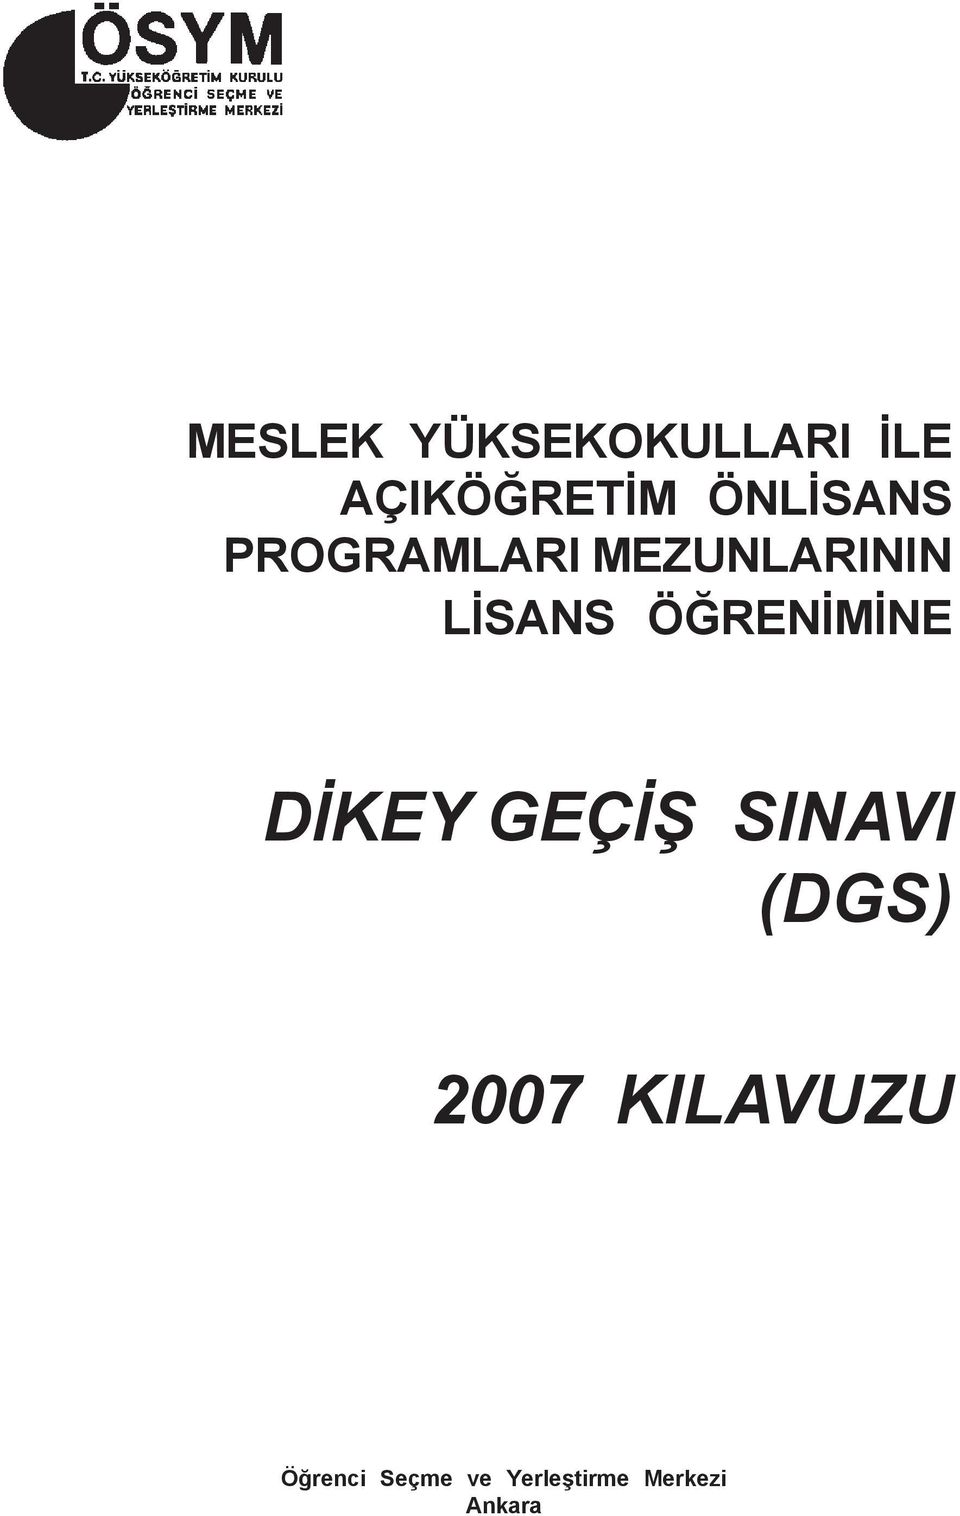 ÖÐRENÝMÝNE DÝKEY GEÇÝÞ SINAVI (DGS) 2007